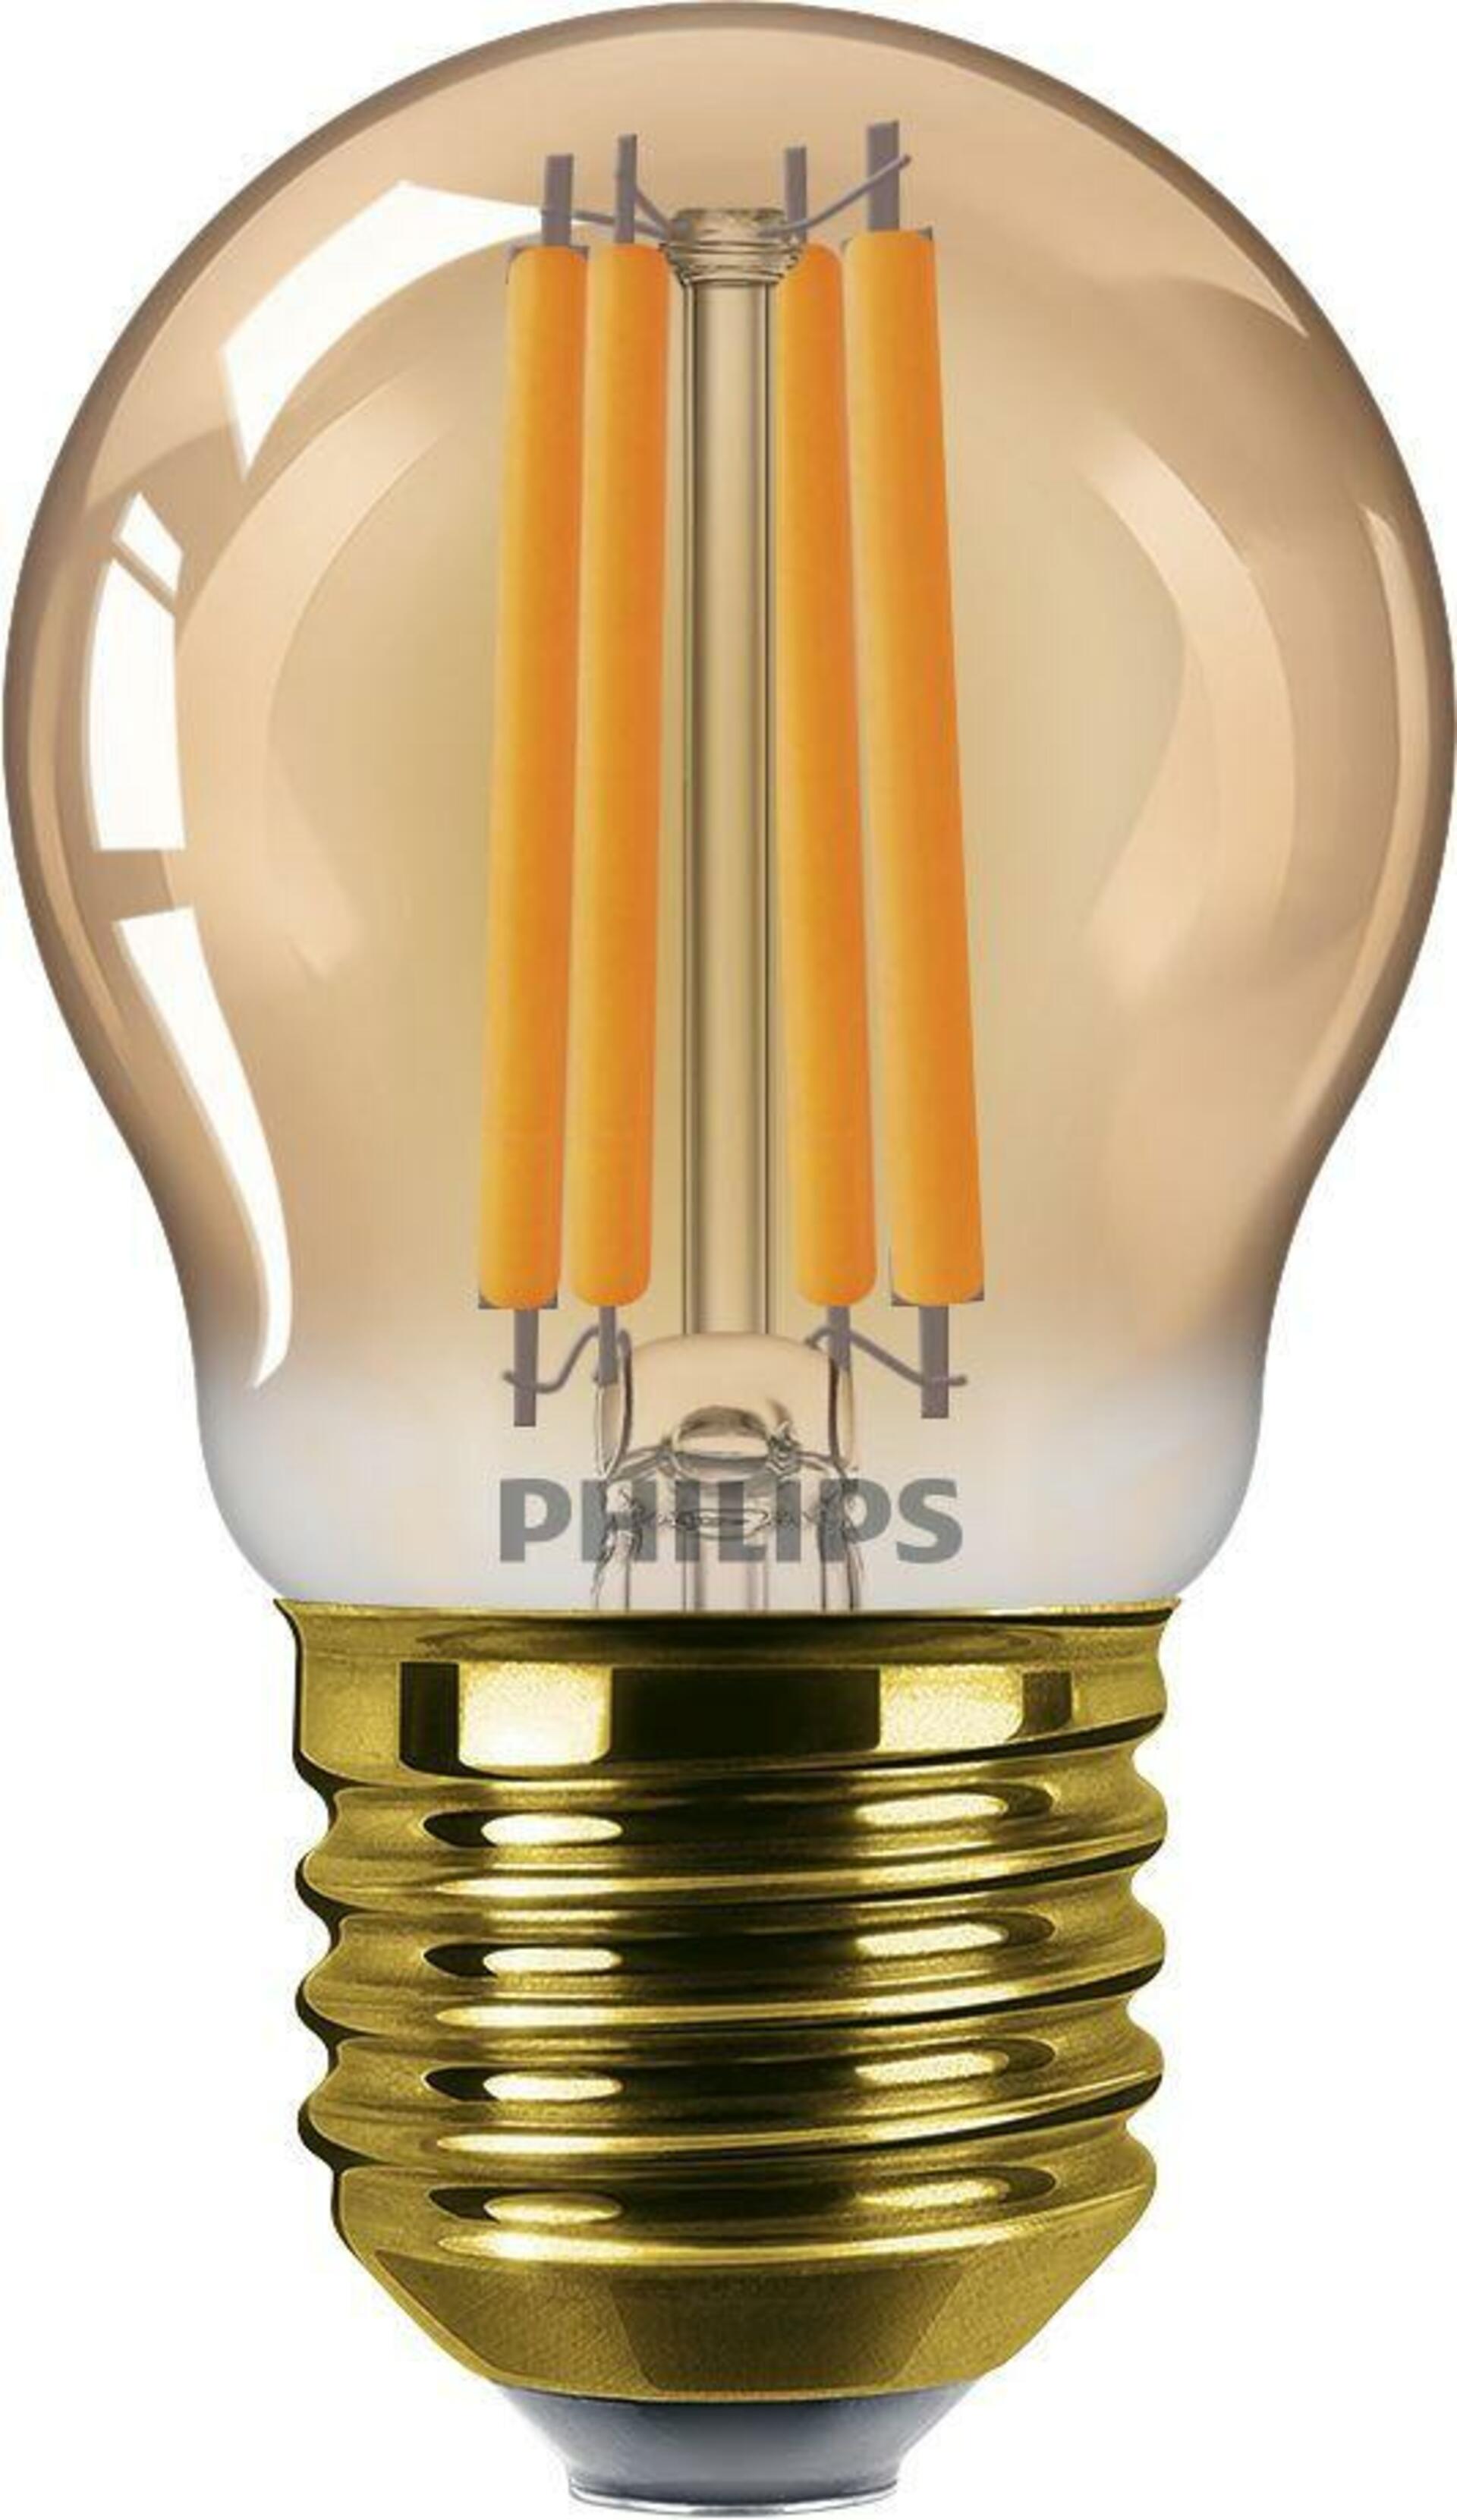 Philips LED filament žárovka E27 P45 6W (40W) 470lm 1800K nestmívatelná, jantarová